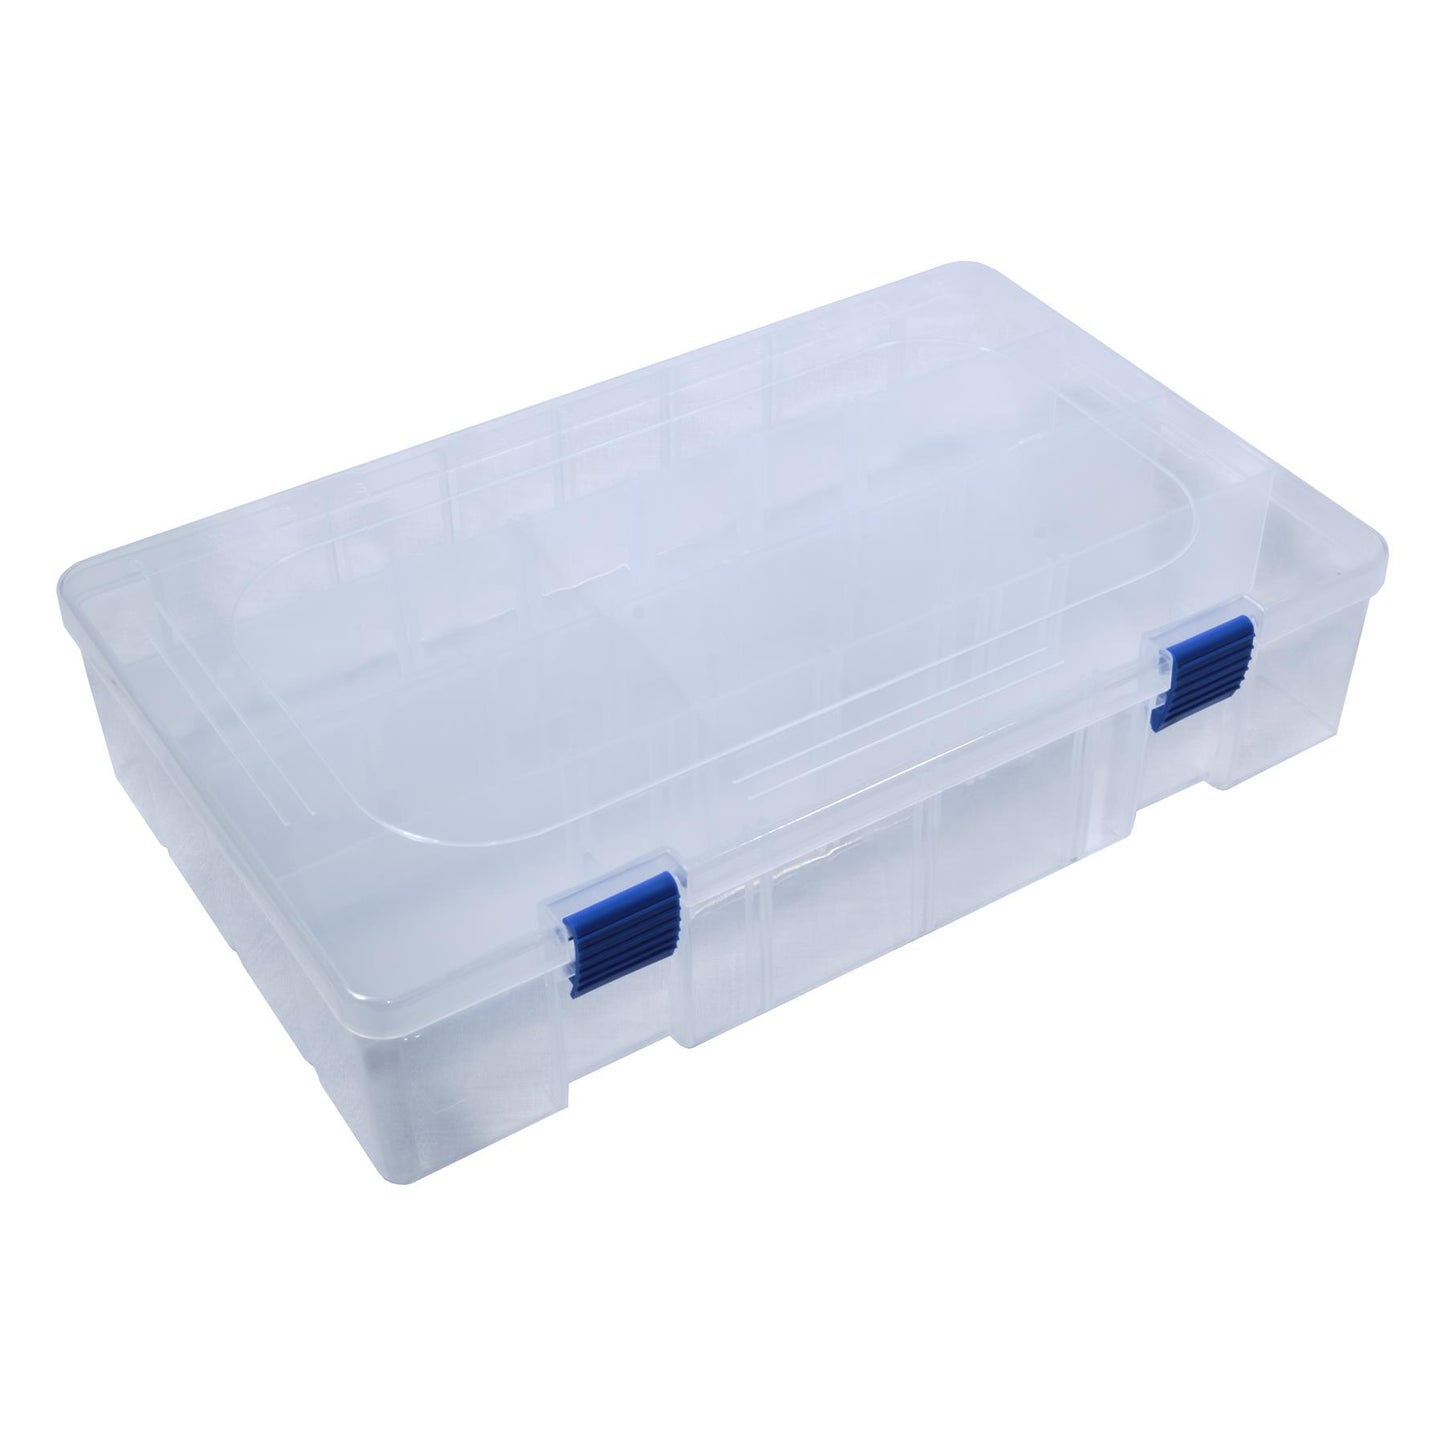 TronixPro Tackle Storage Box